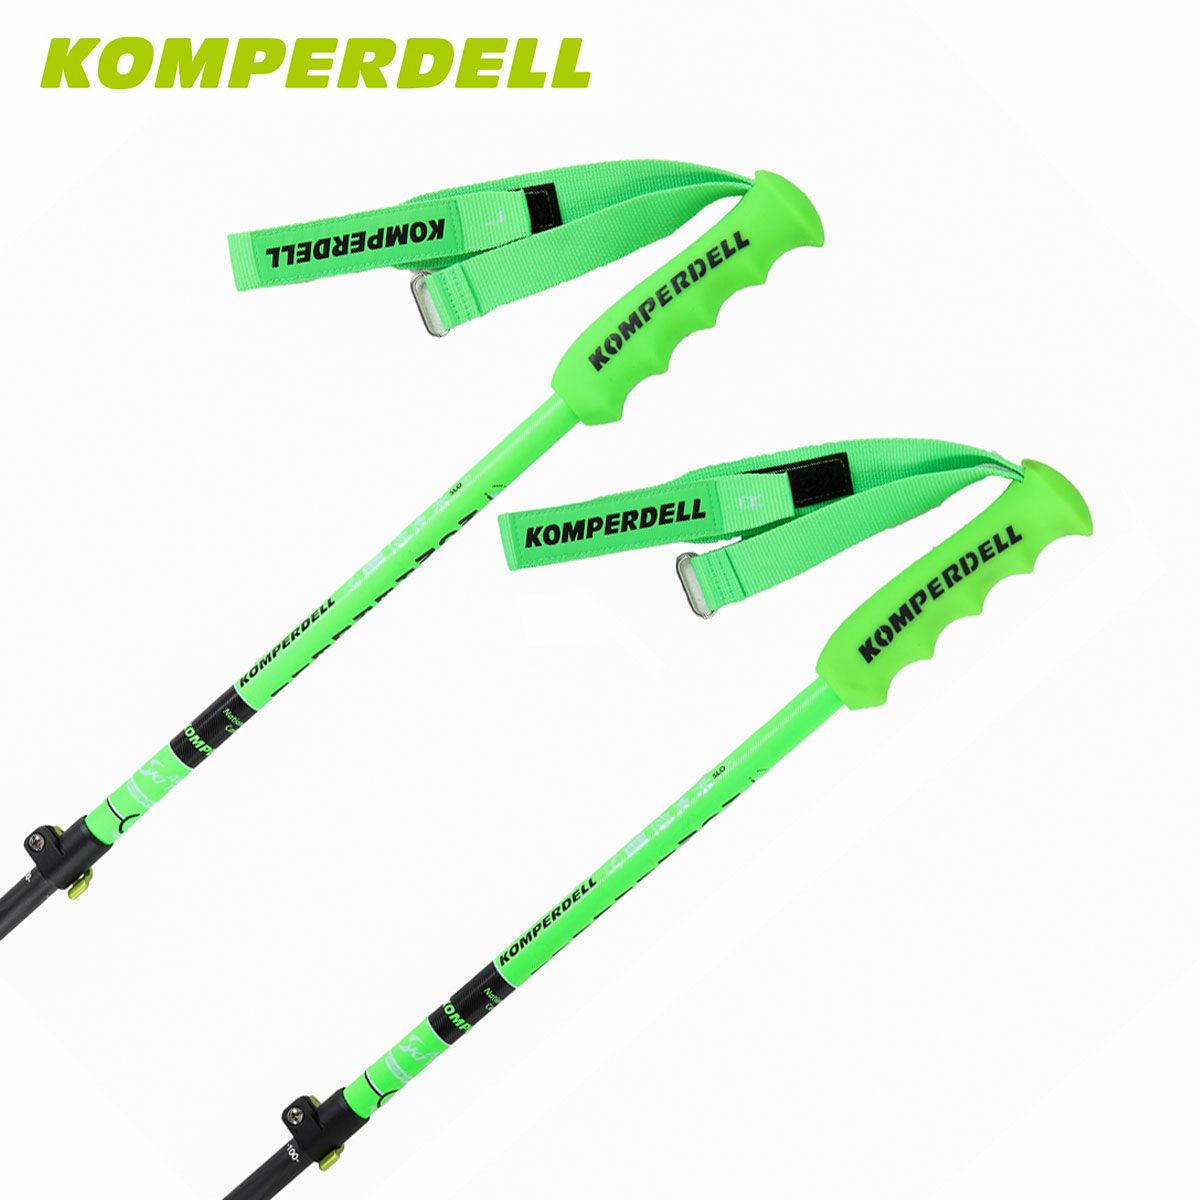 KOMPERDELL コンパーデル スキーポール ストック メンズ レディース 伸縮式